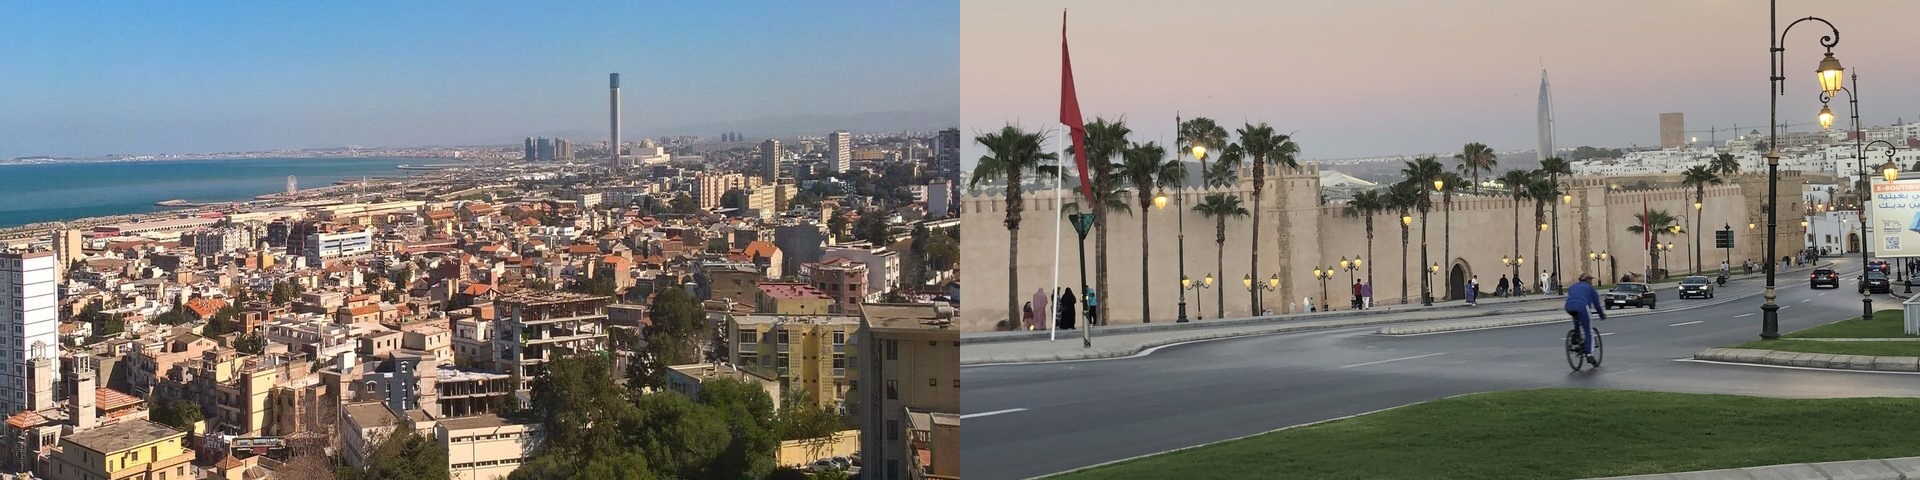 Blick auf die Städte Algier (Algerien) und Rabat (Marokko)